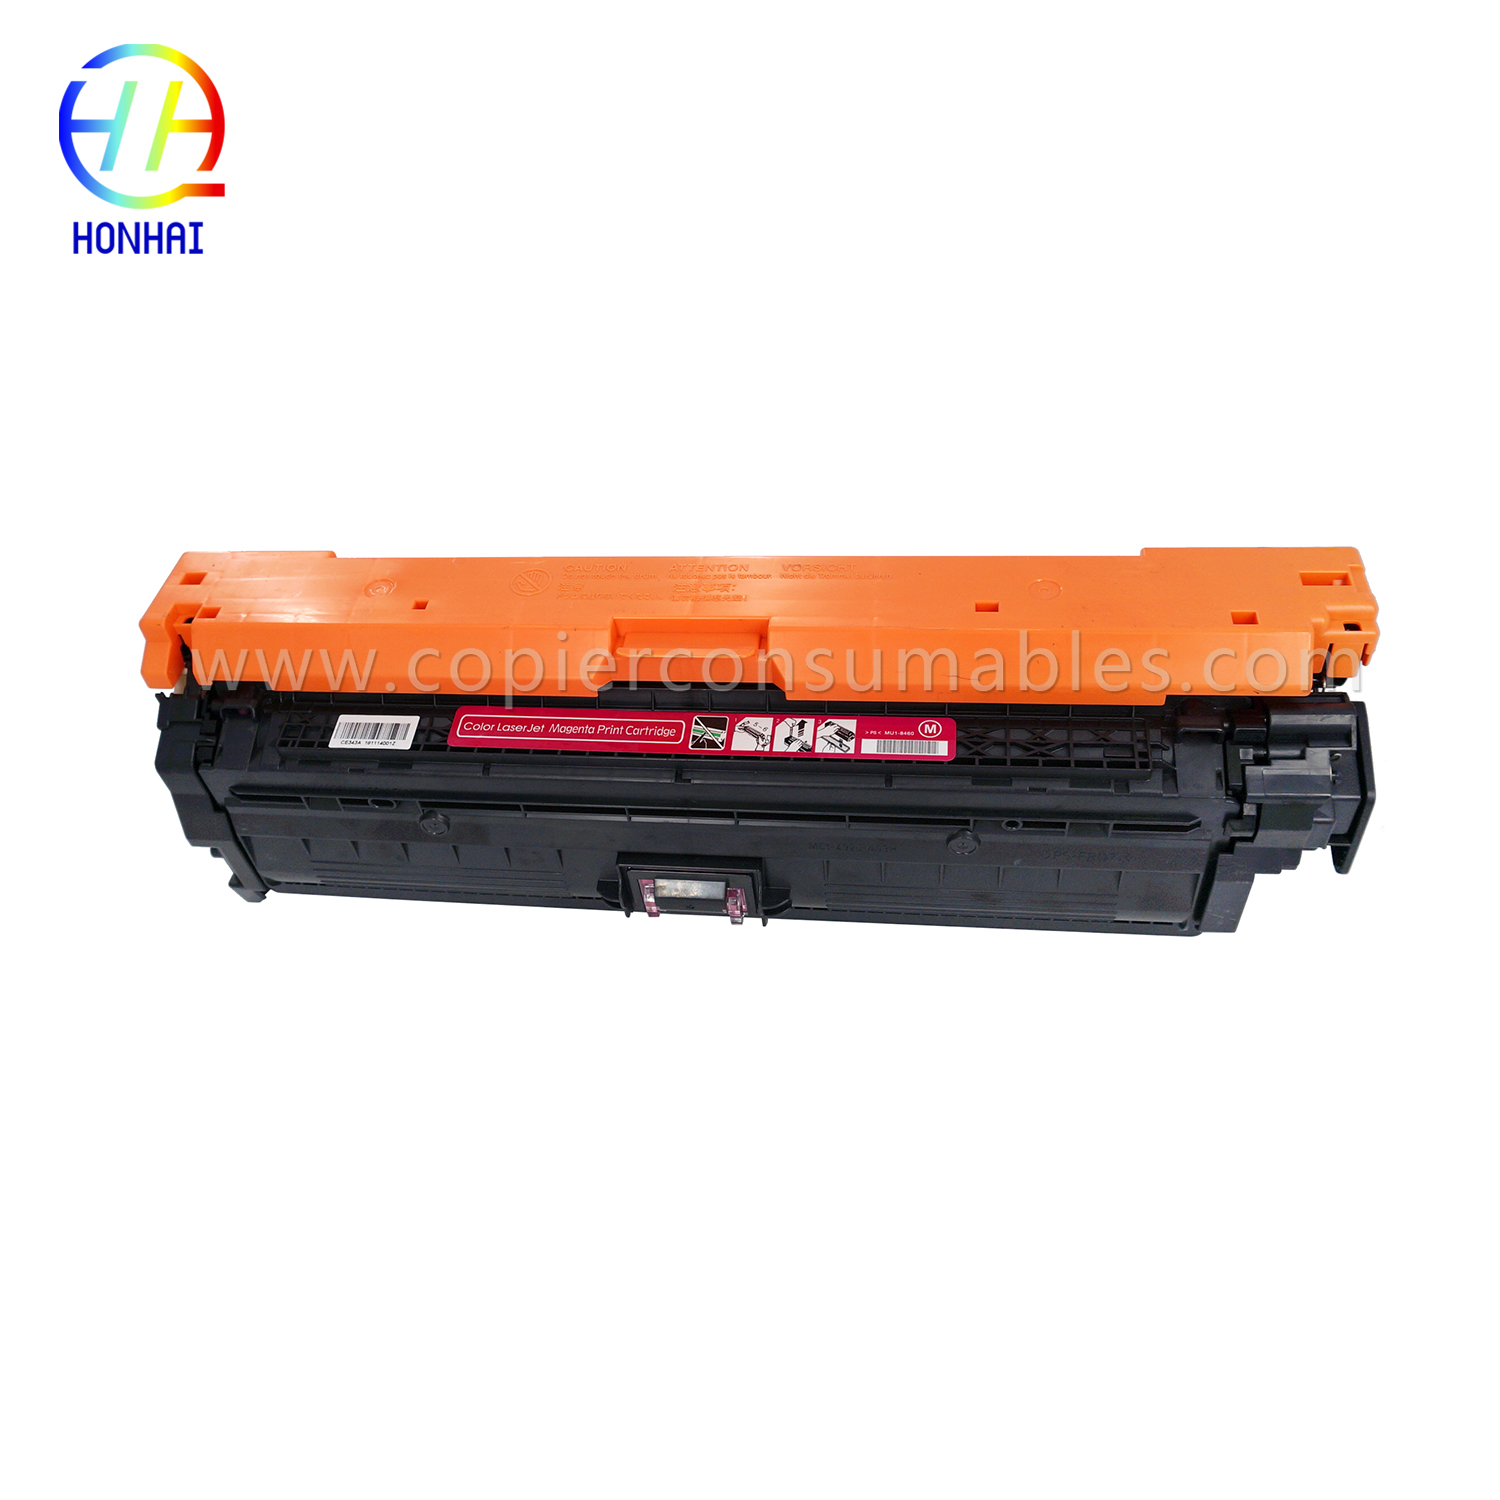 Toner Cartridge for HP LaserJet Enterprise 700 Color M775dn M775f M775z M775z CE343A 651A